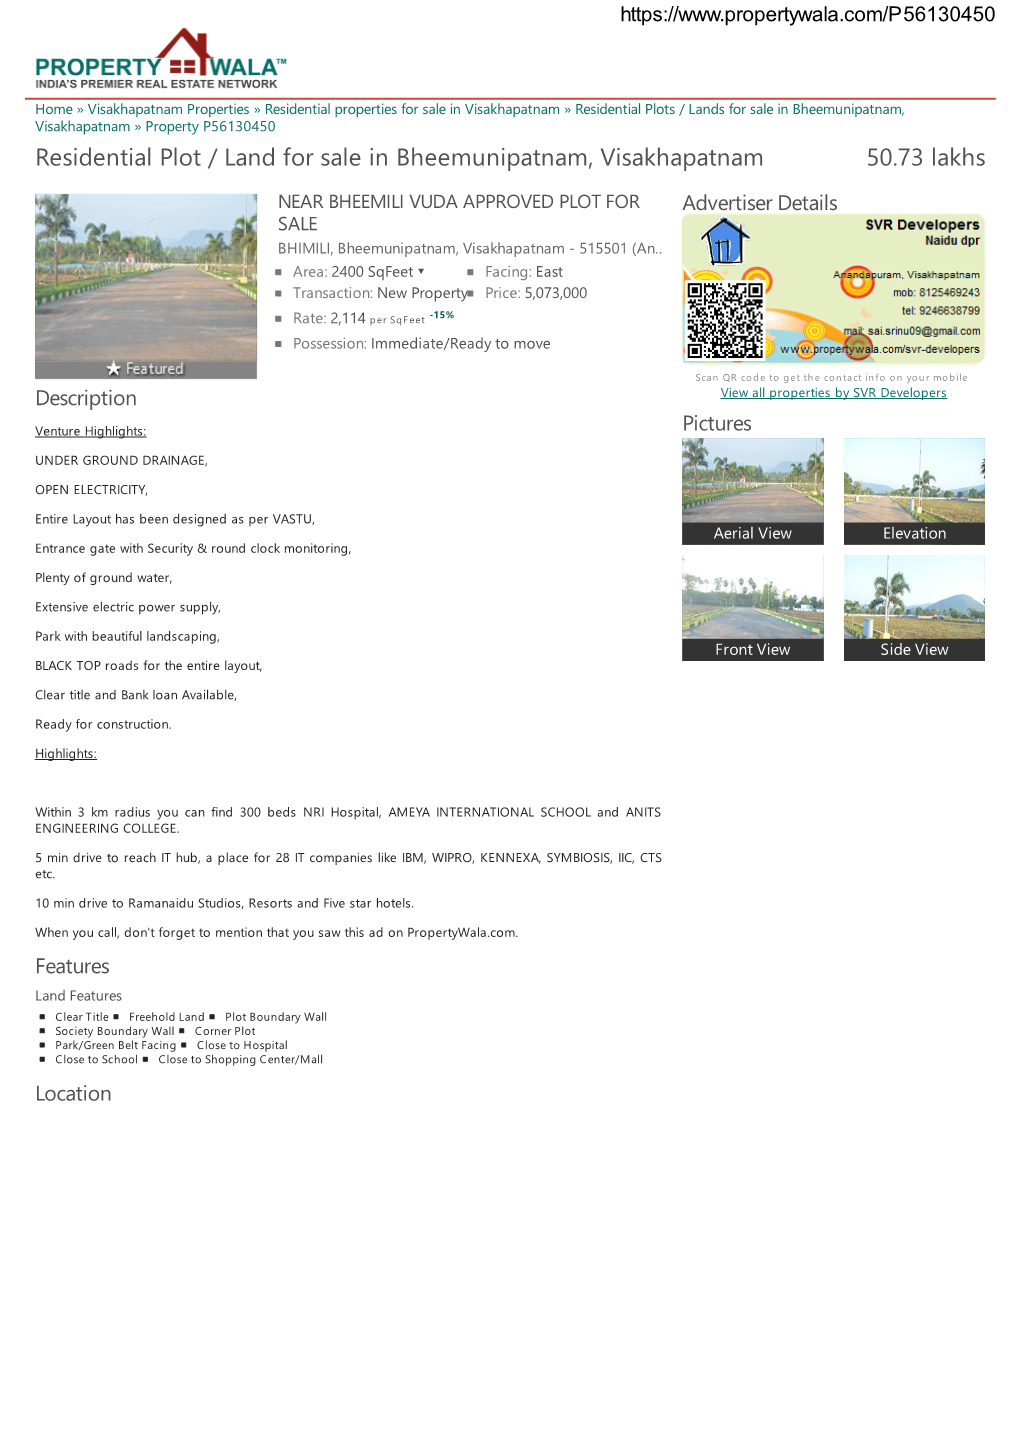 Residential Plot / Land for Sale in Bheemunipatnam, Visakhapatnam